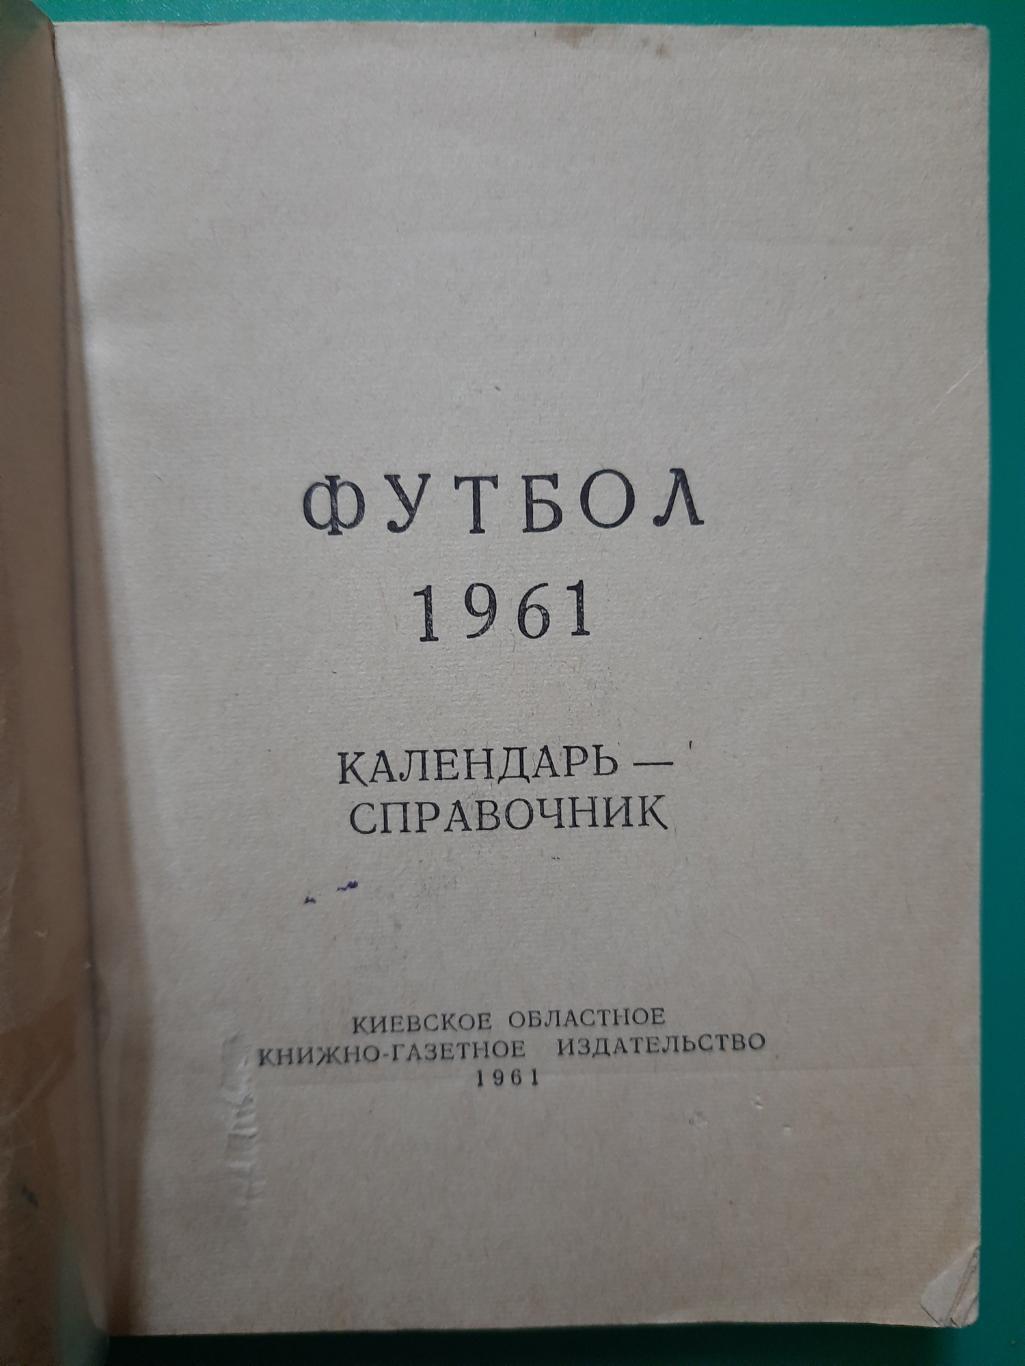 календарь-справочник,Футбол 1961, Киев. 1